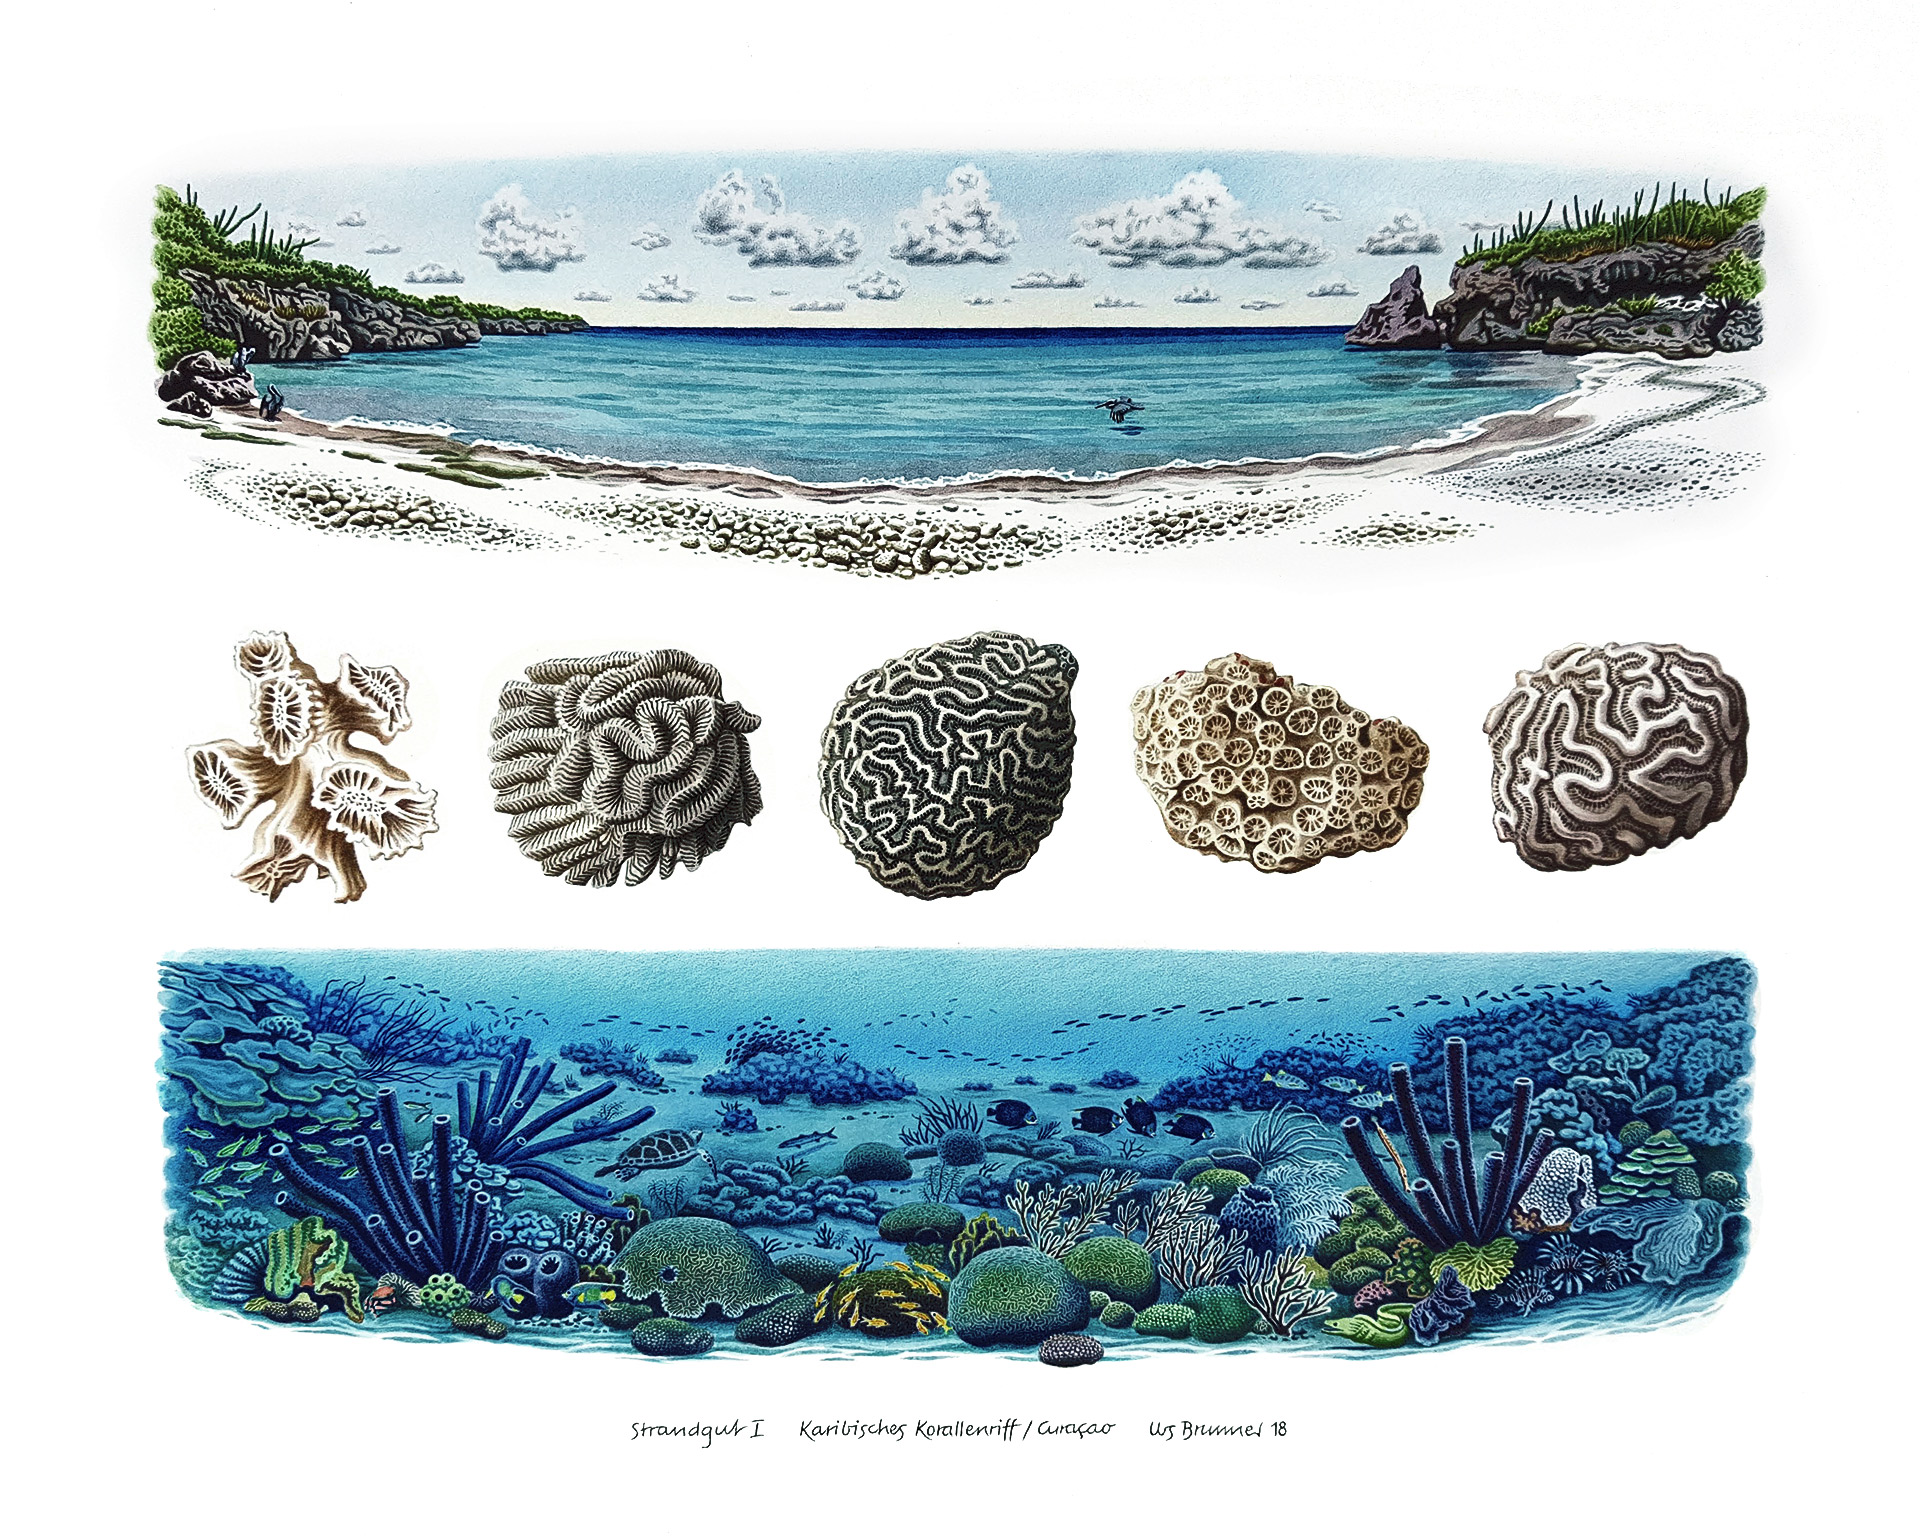 Strandgut l / Karibisches Korallenriff, 2018, Aquarell und Farbstift auf Papier, 38 x 42 cm